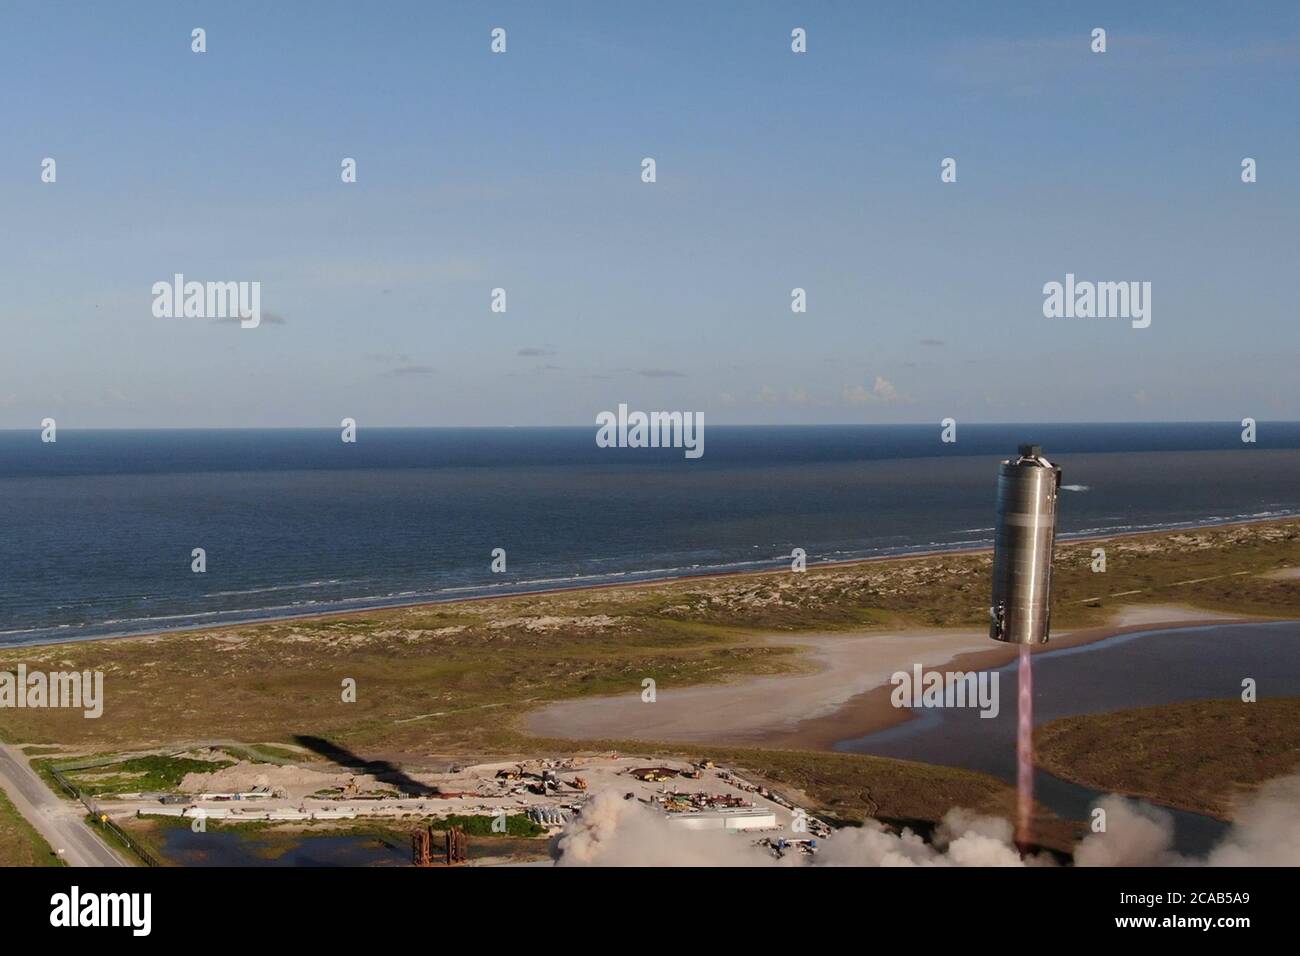 Boca Chica, Estados Unidos. 05 de agosto de 2020. El prototipo de tamaño completo de la nave espacial SN5 de SpaceX completó su primer vuelo de prueba exitoso, elevándose a 490 metros (150 pies) sobre Boca Chica, Texas, el martes 4 de agosto de 2020. Poco después del vuelo, el director general de SpaceX, Elon Musk, tuiteó: "ars está buscando real". Photo by SpaceX/UPI crédito: UPI/Alamy Live News Foto de stock